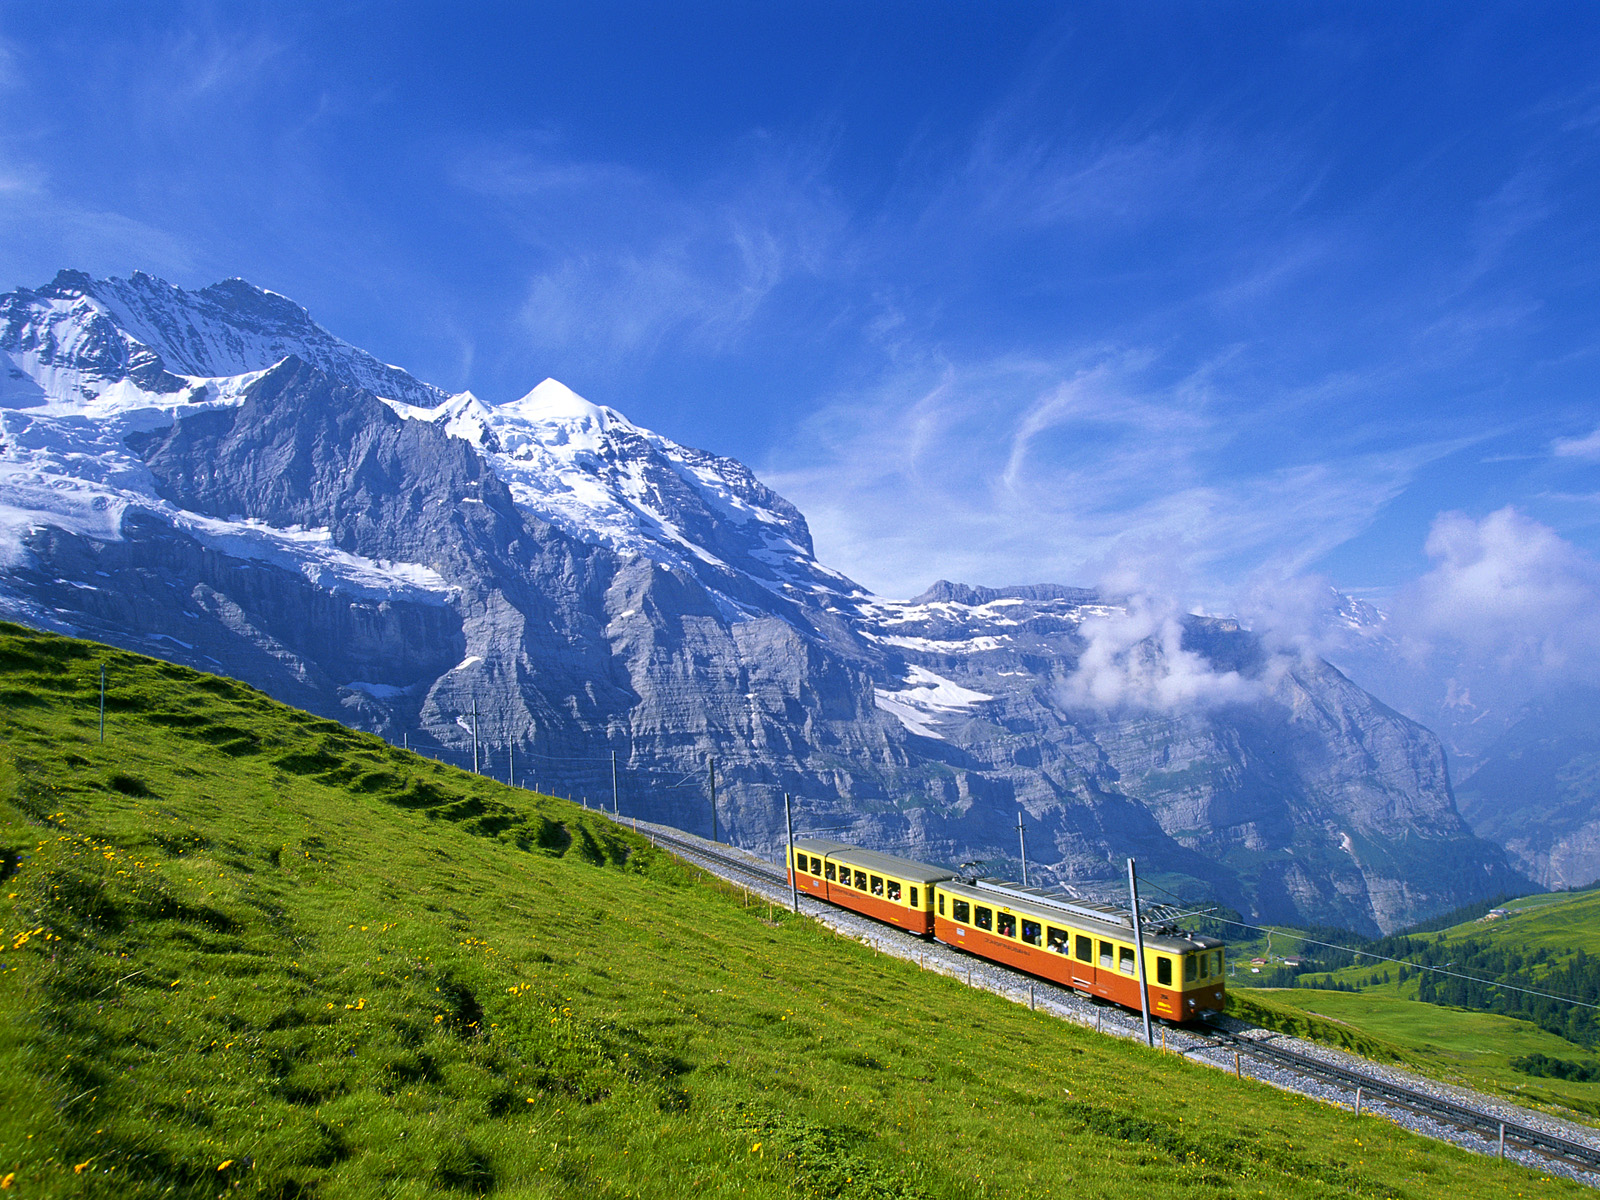 Train near Jungfrau Mountain